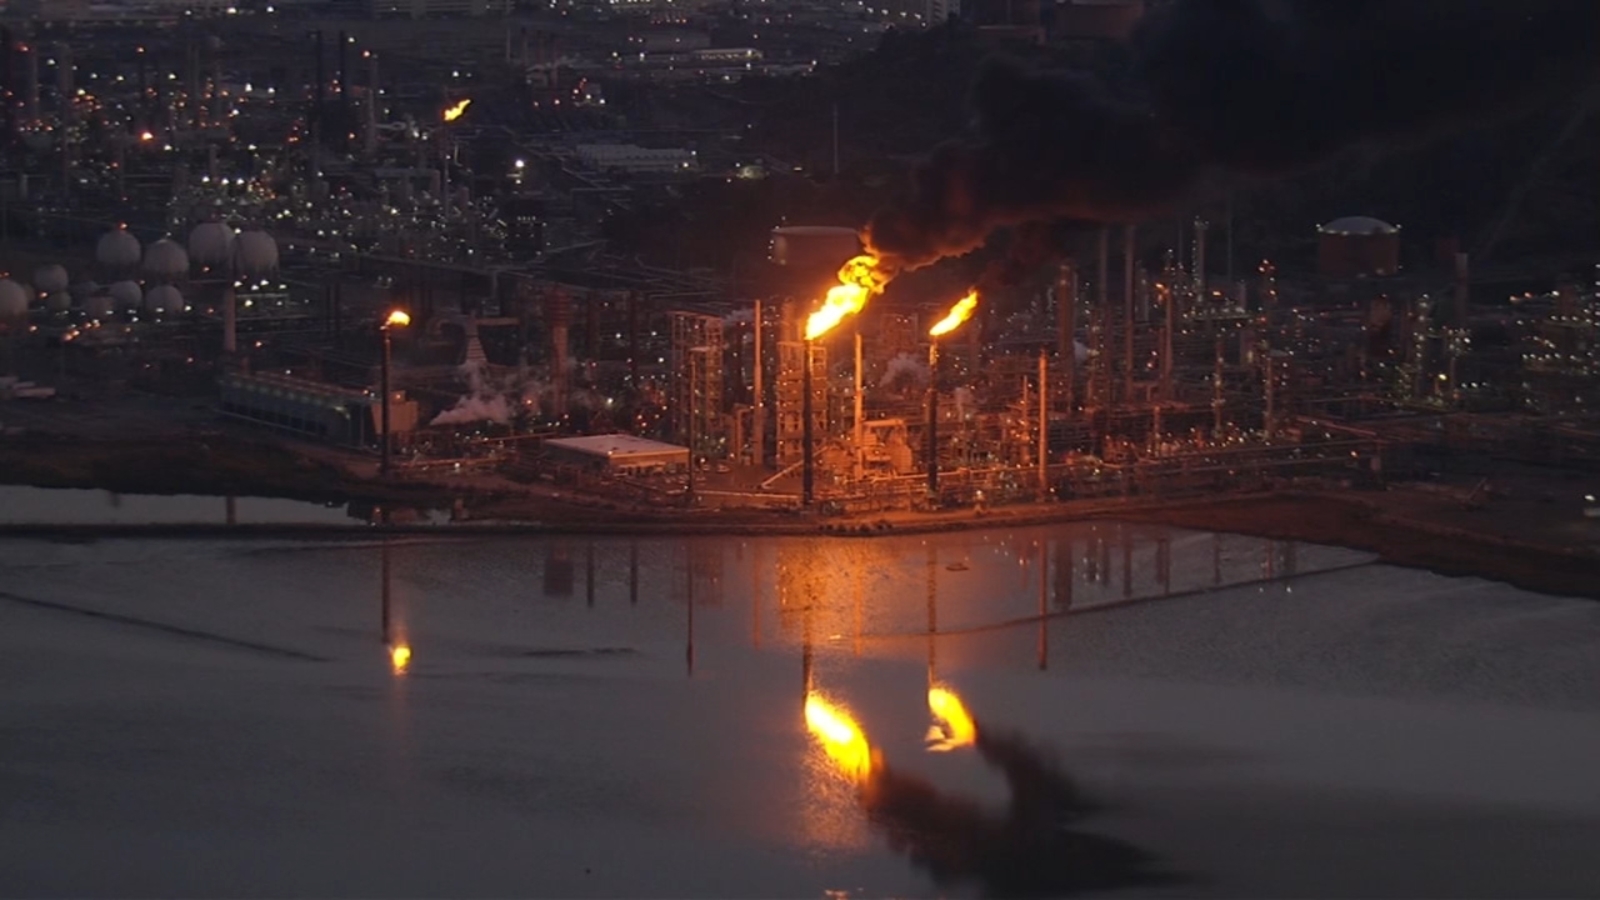 حرق الغاز في مصفاة شيفرون ريتشموند